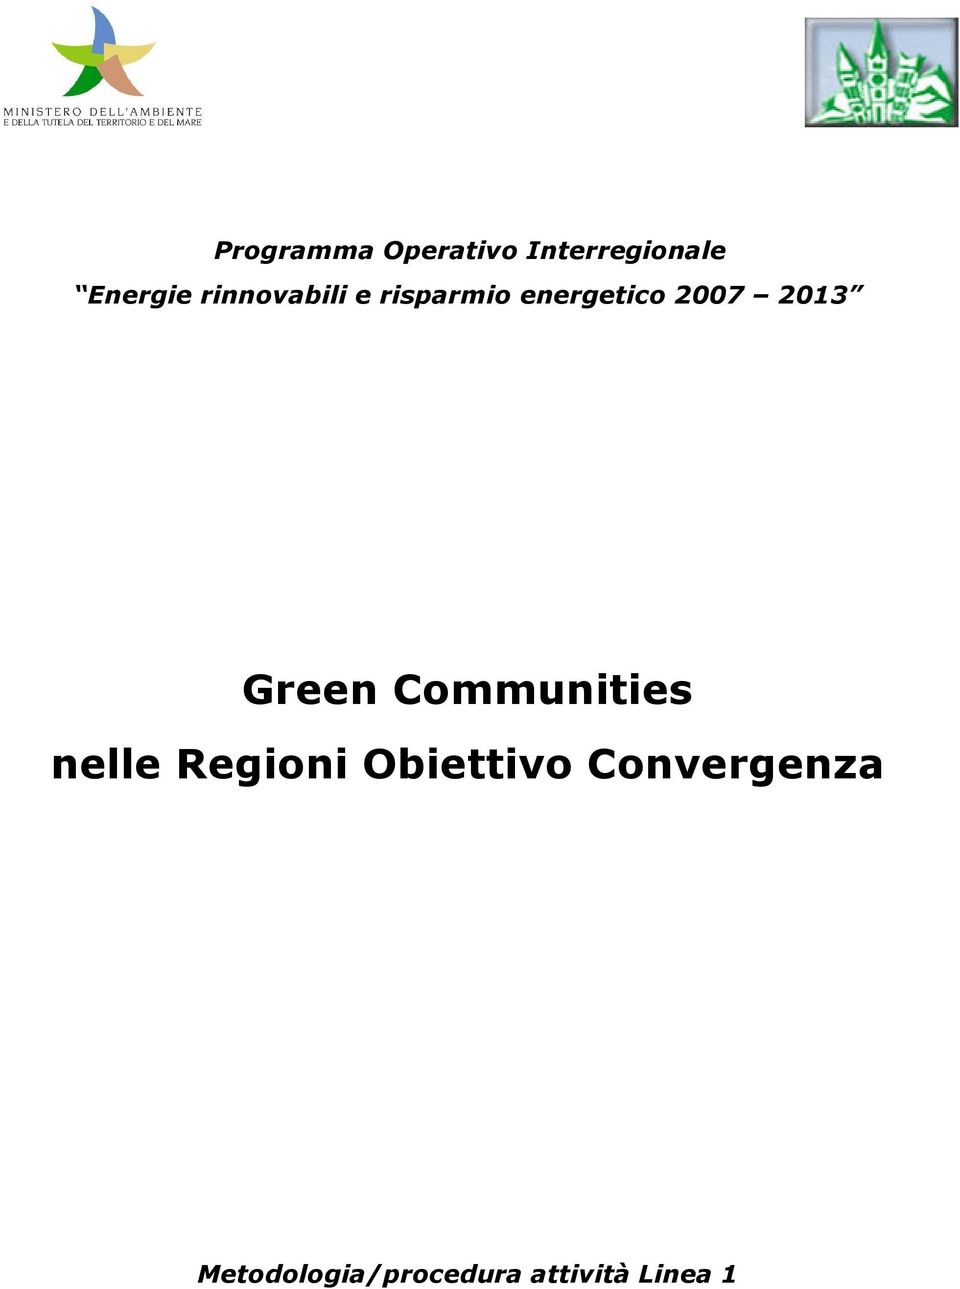 Green Communities nelle Regioni Obiettivo